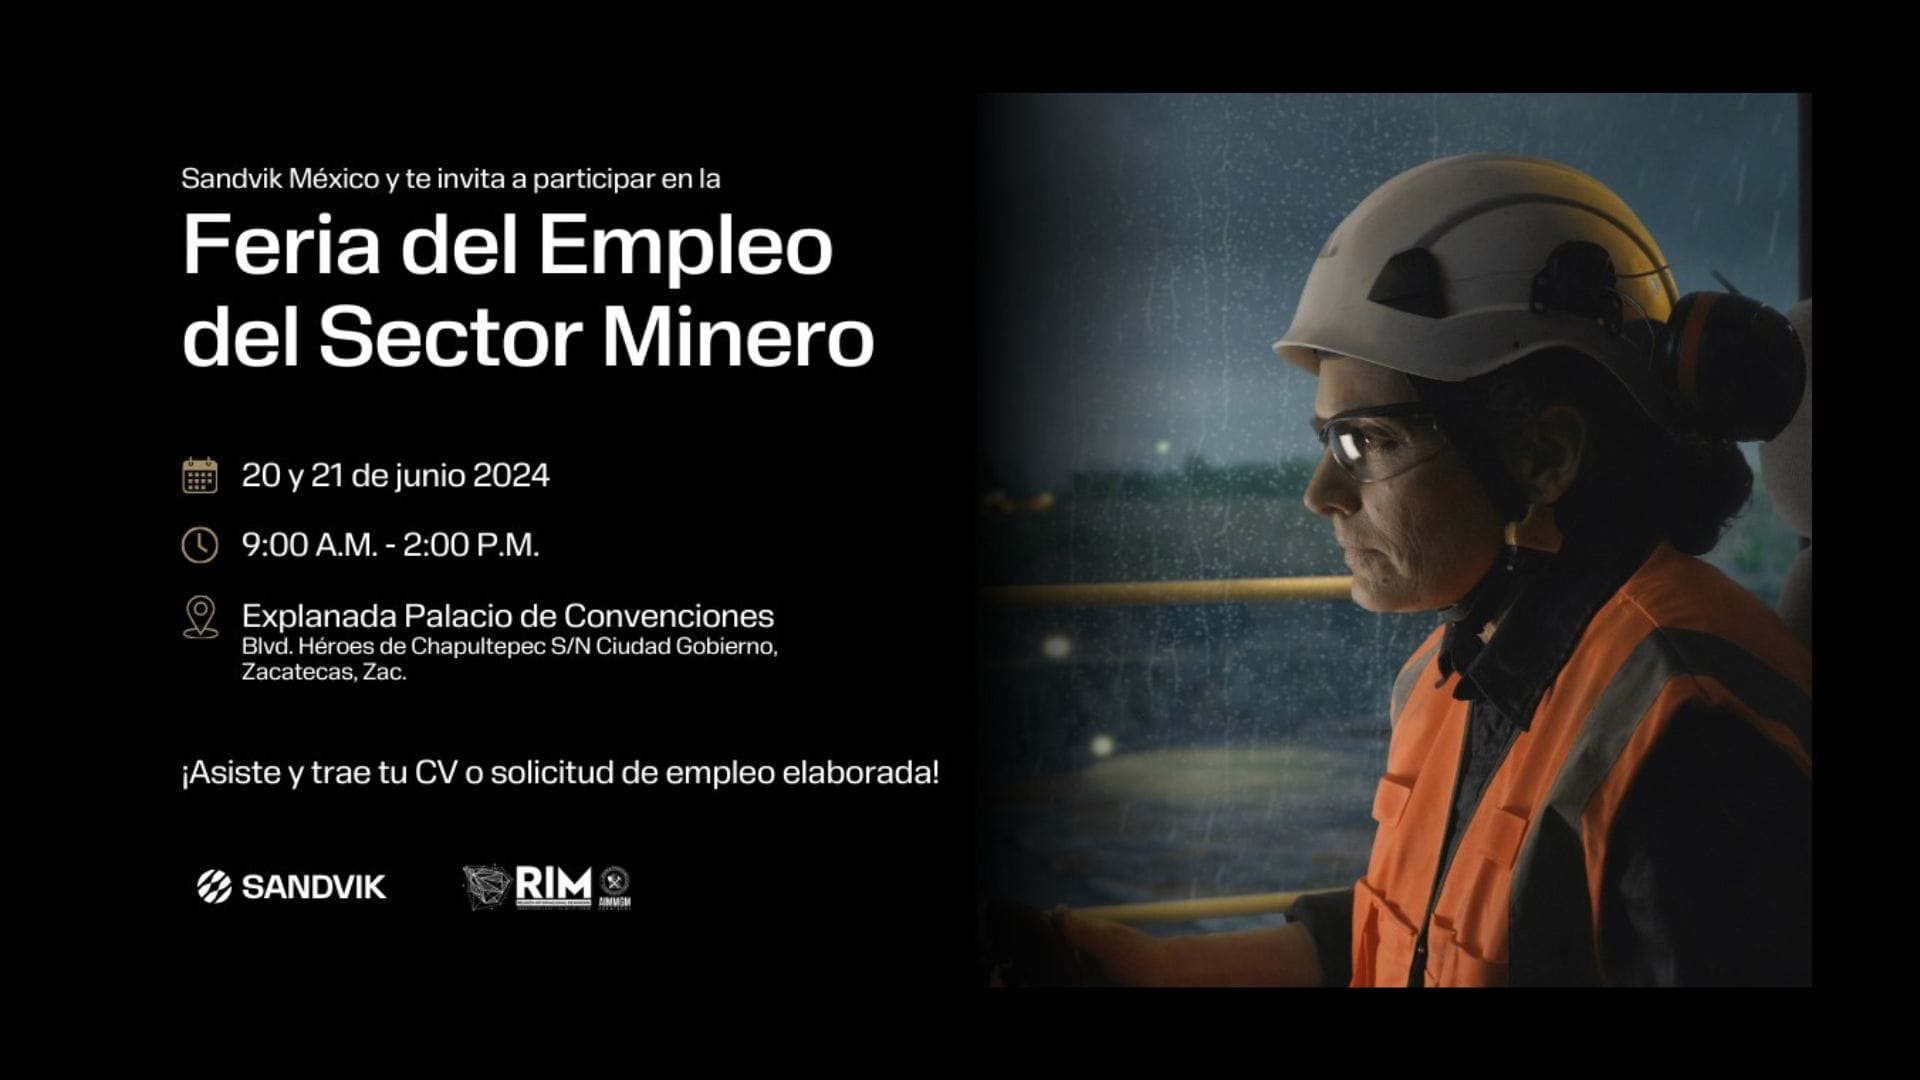 Este 20 y 21 de junio en la Feria del Empleo del Sector minero, RIM Zacatecas.